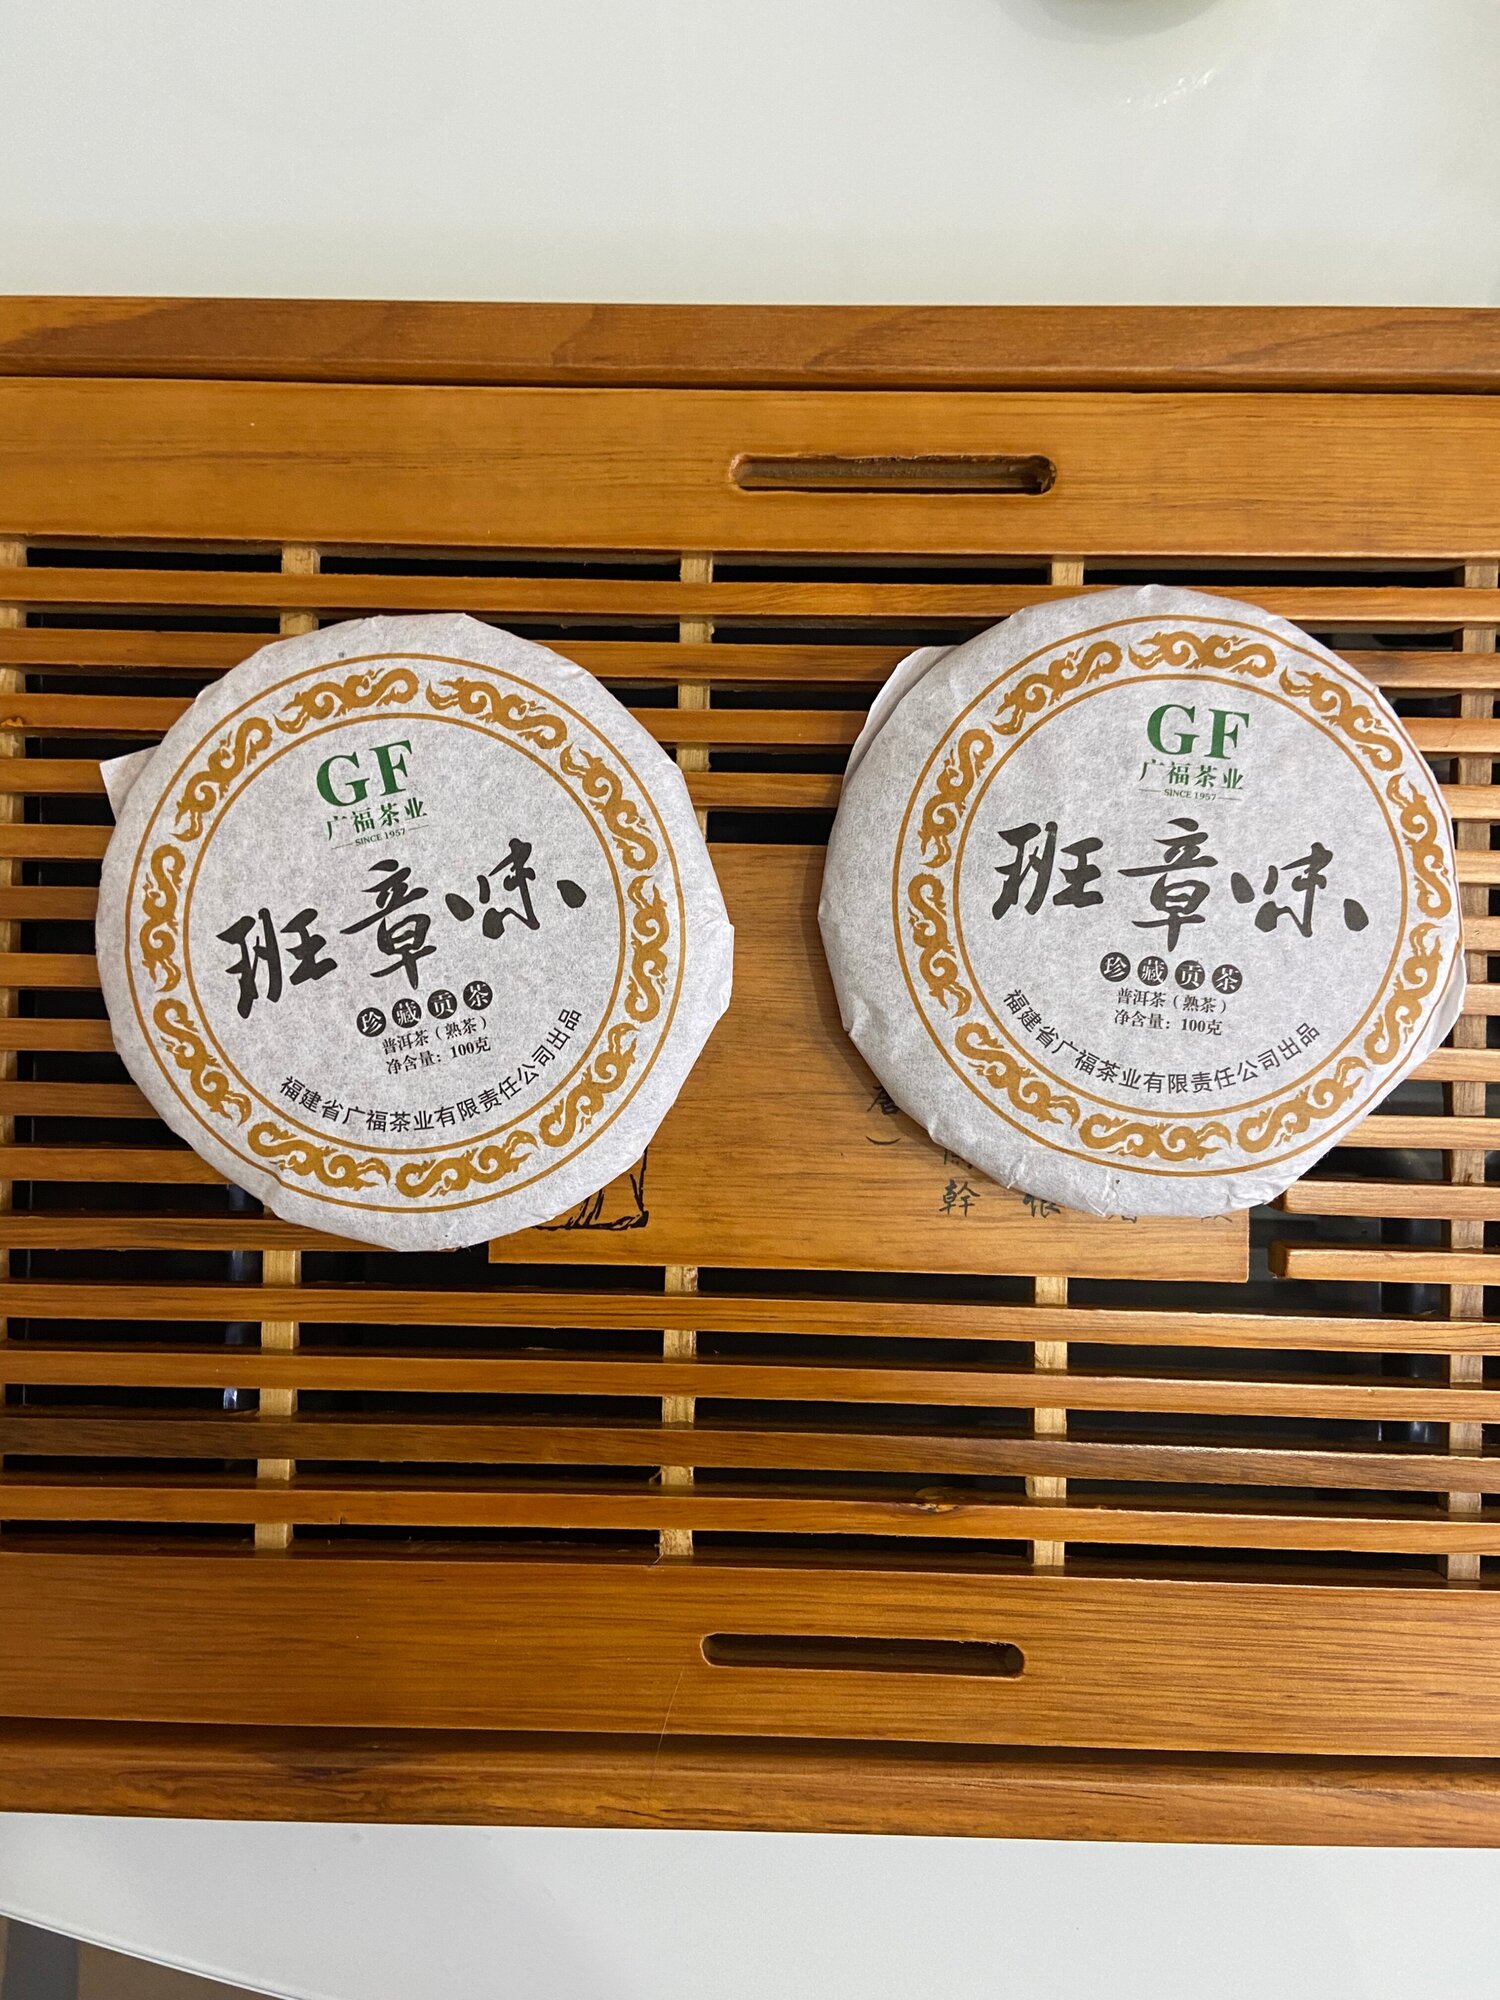 Китайский чай, Пуэр Шу, Гуанчжоу, блинчик 100гр, пресованный, крепкий, насыщенный, листовой